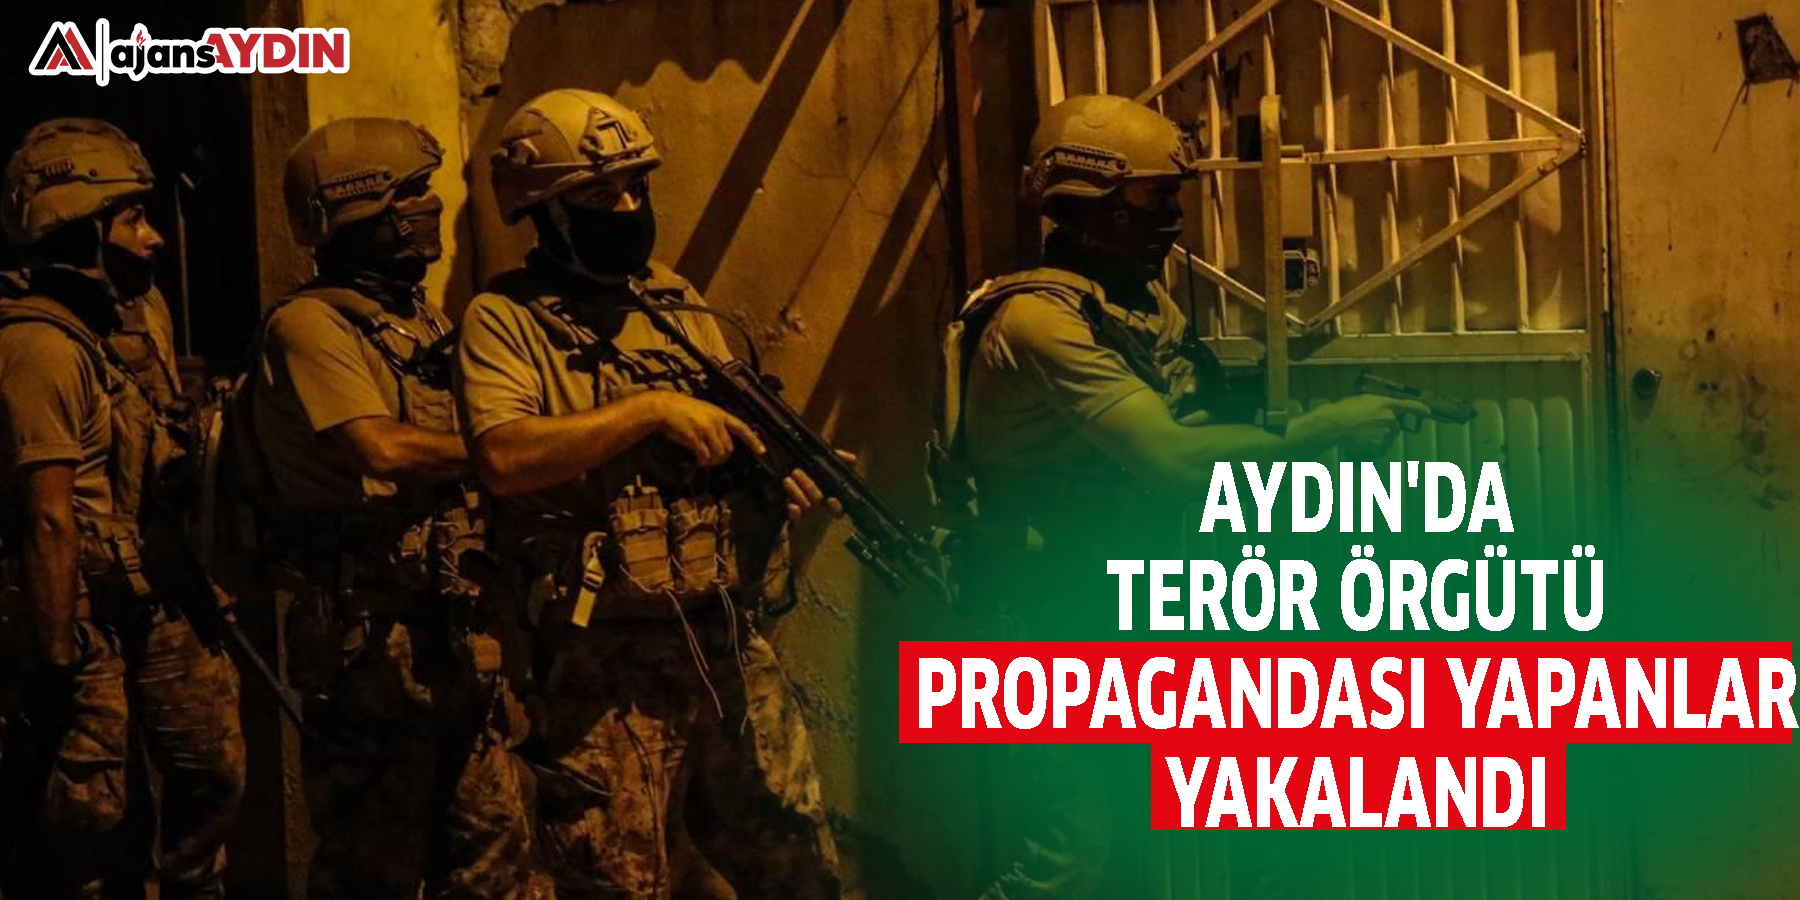 Aydın'da terör örgütü propagandası yapanlar yakalandı